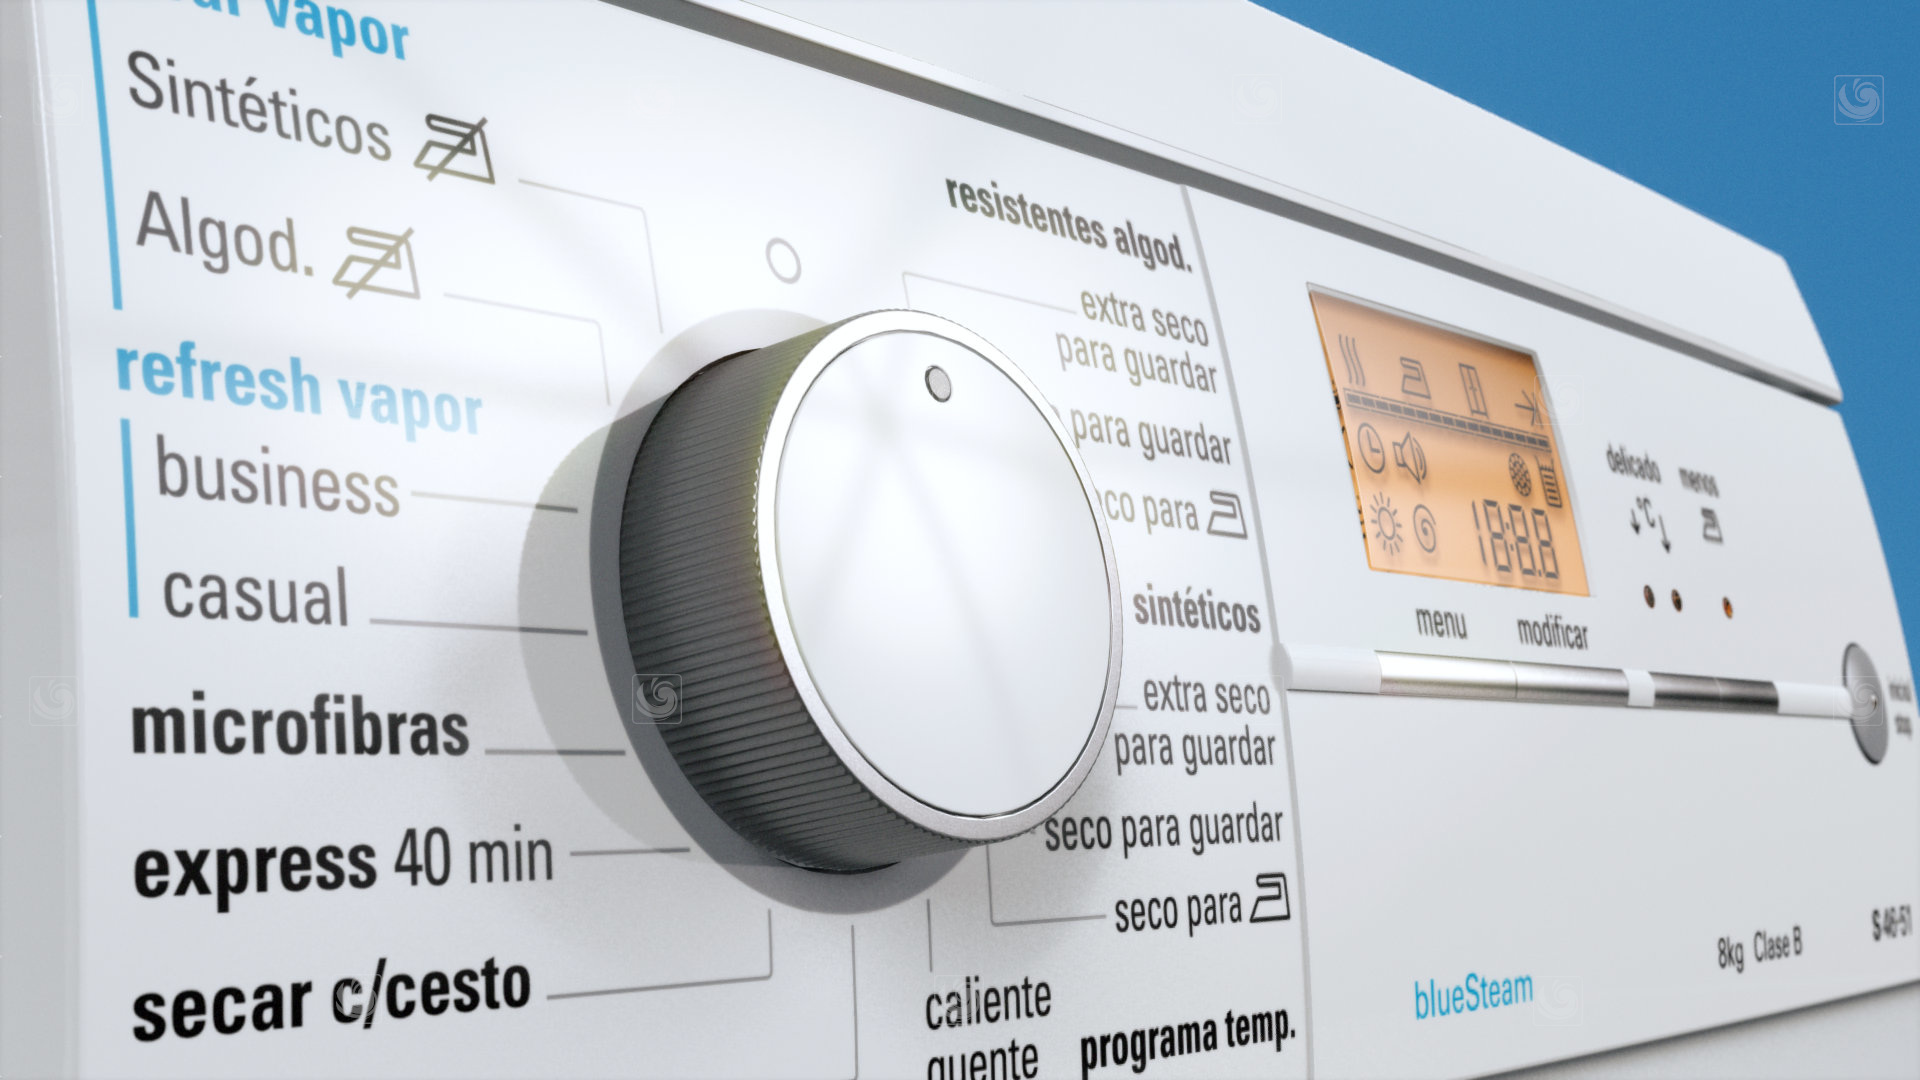 Fotograma de animación 3D mostrando detalles de los controles de una secadora Siemens